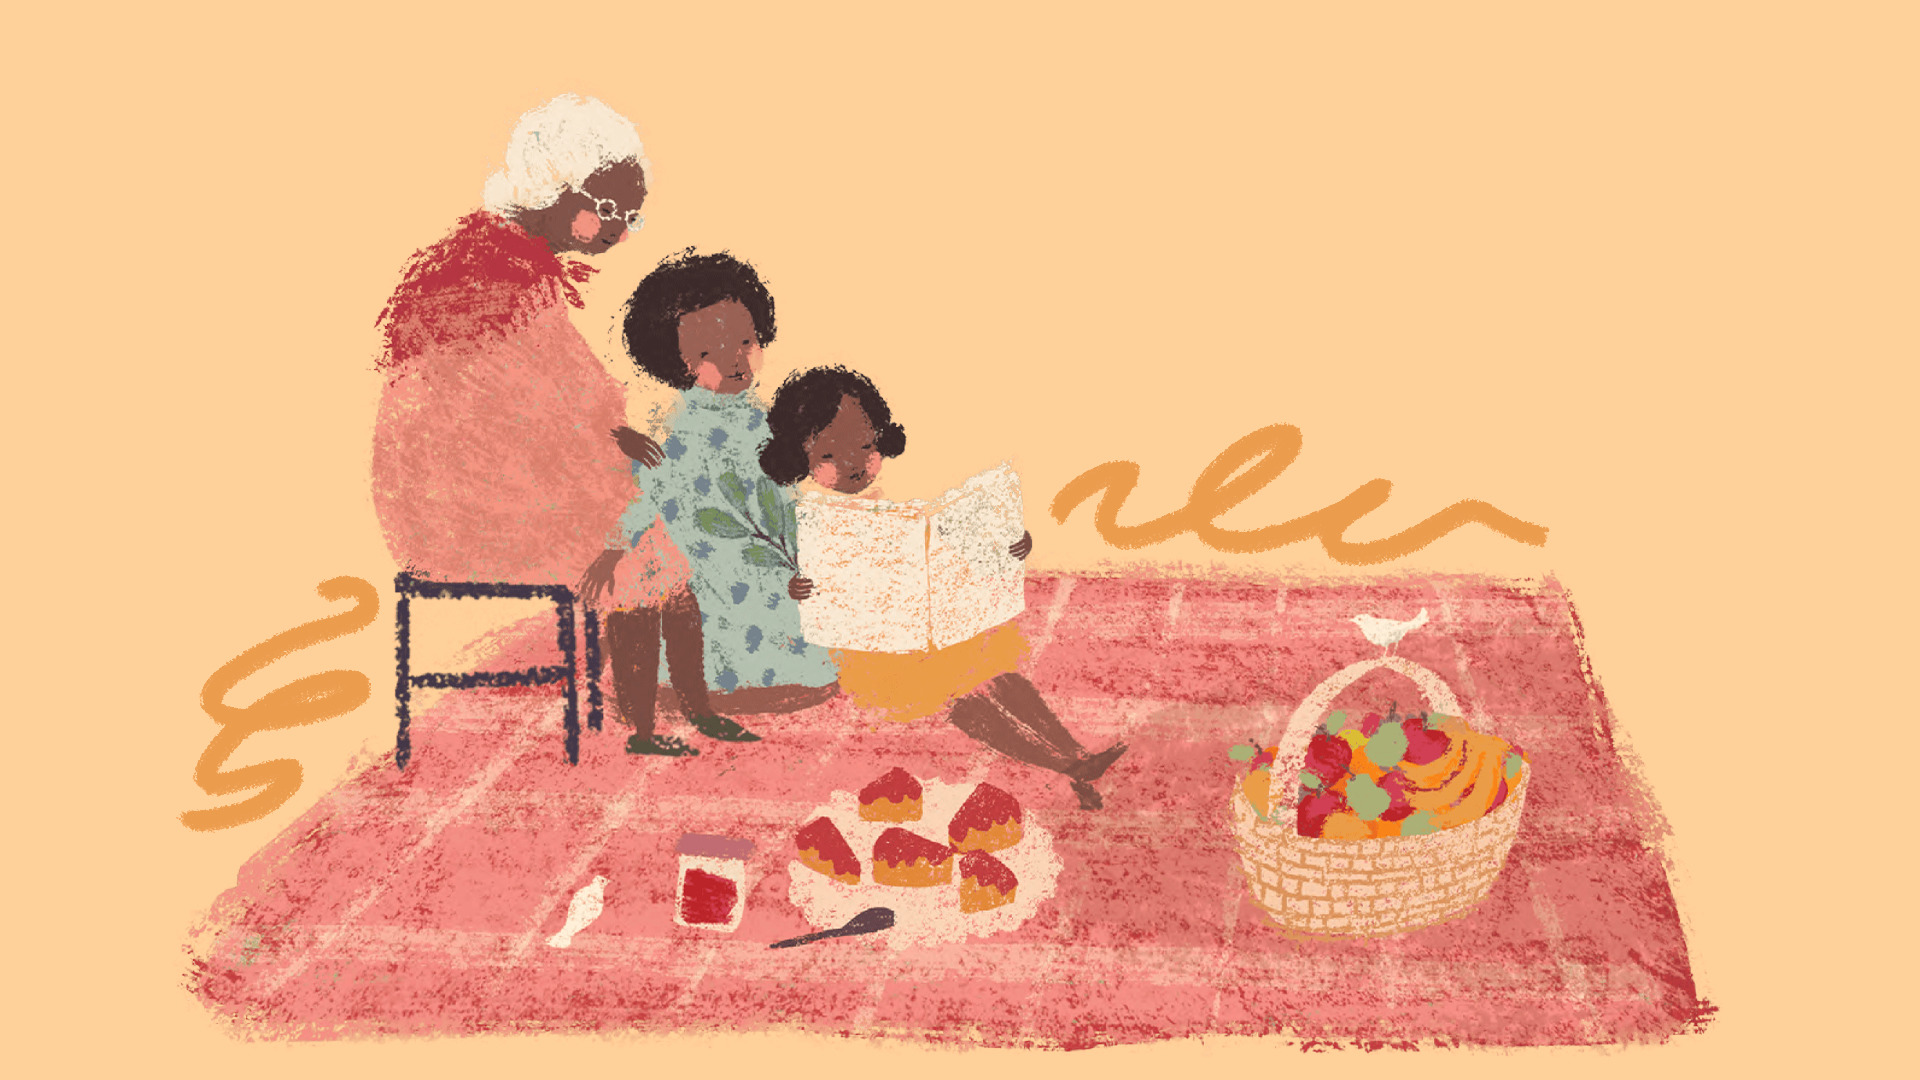 Imagem de miolo do livro "Doçura", vencedor do Jabuti 2023. Três gerações de mulheres, avó, mãe e filha leem juntas o mesmo livro. Na cena, também há uma cesta de frutas e bolo.